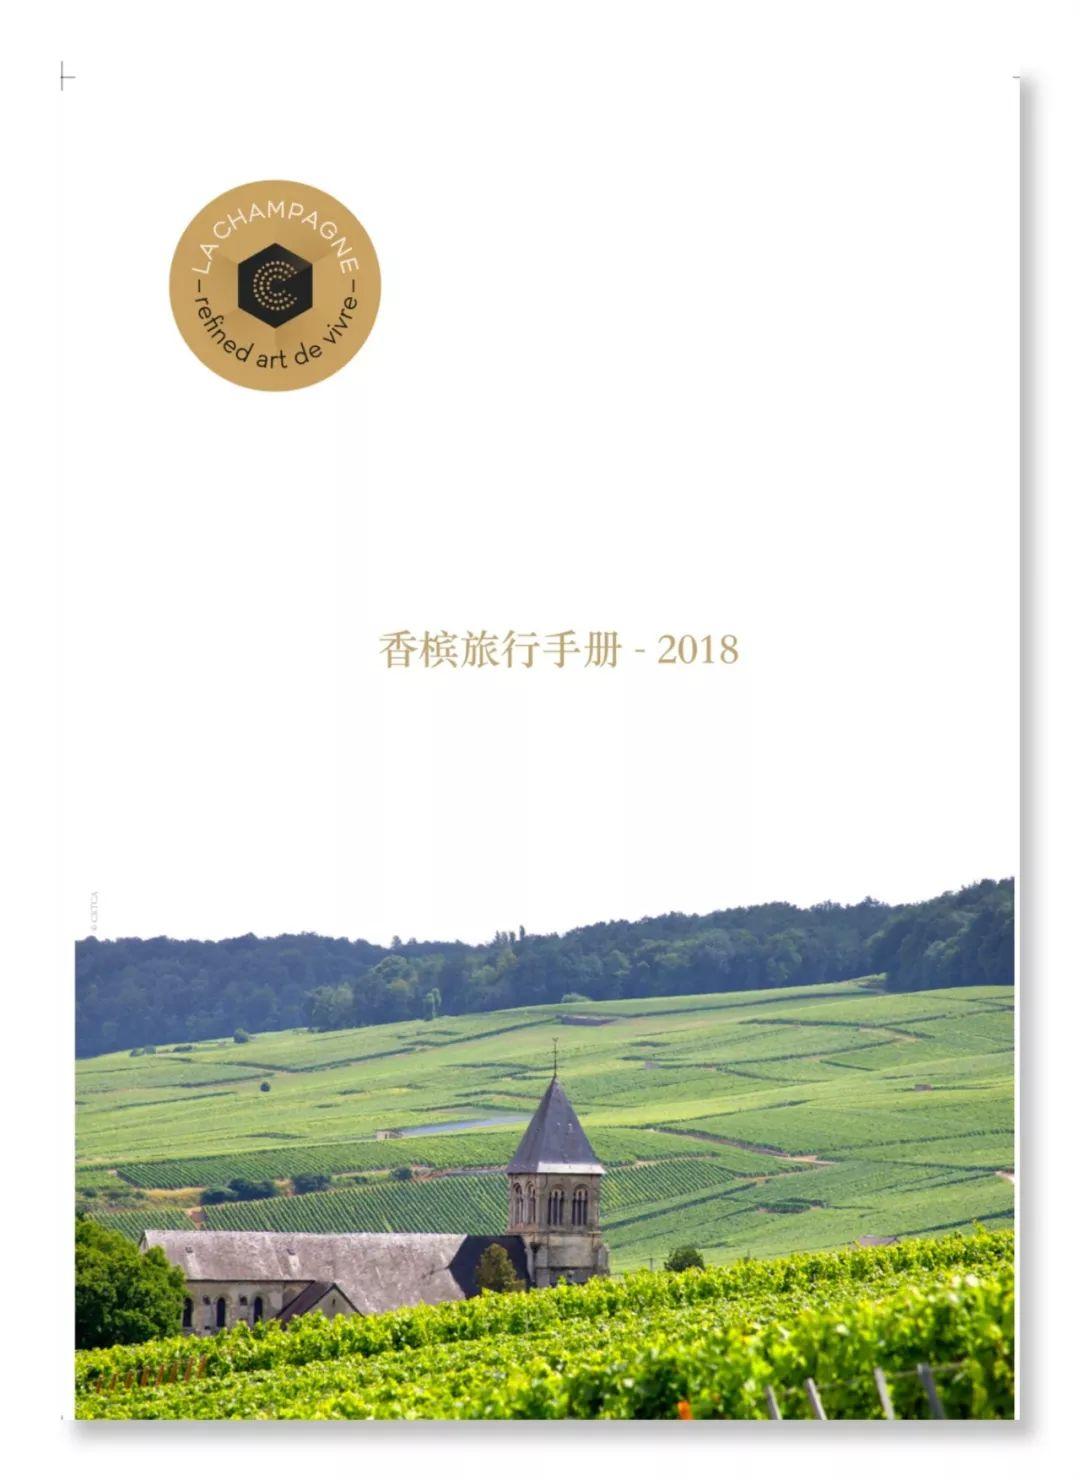 香槟品鉴盛典，法国香槟区旅游局将完成中国首次官方亮相！